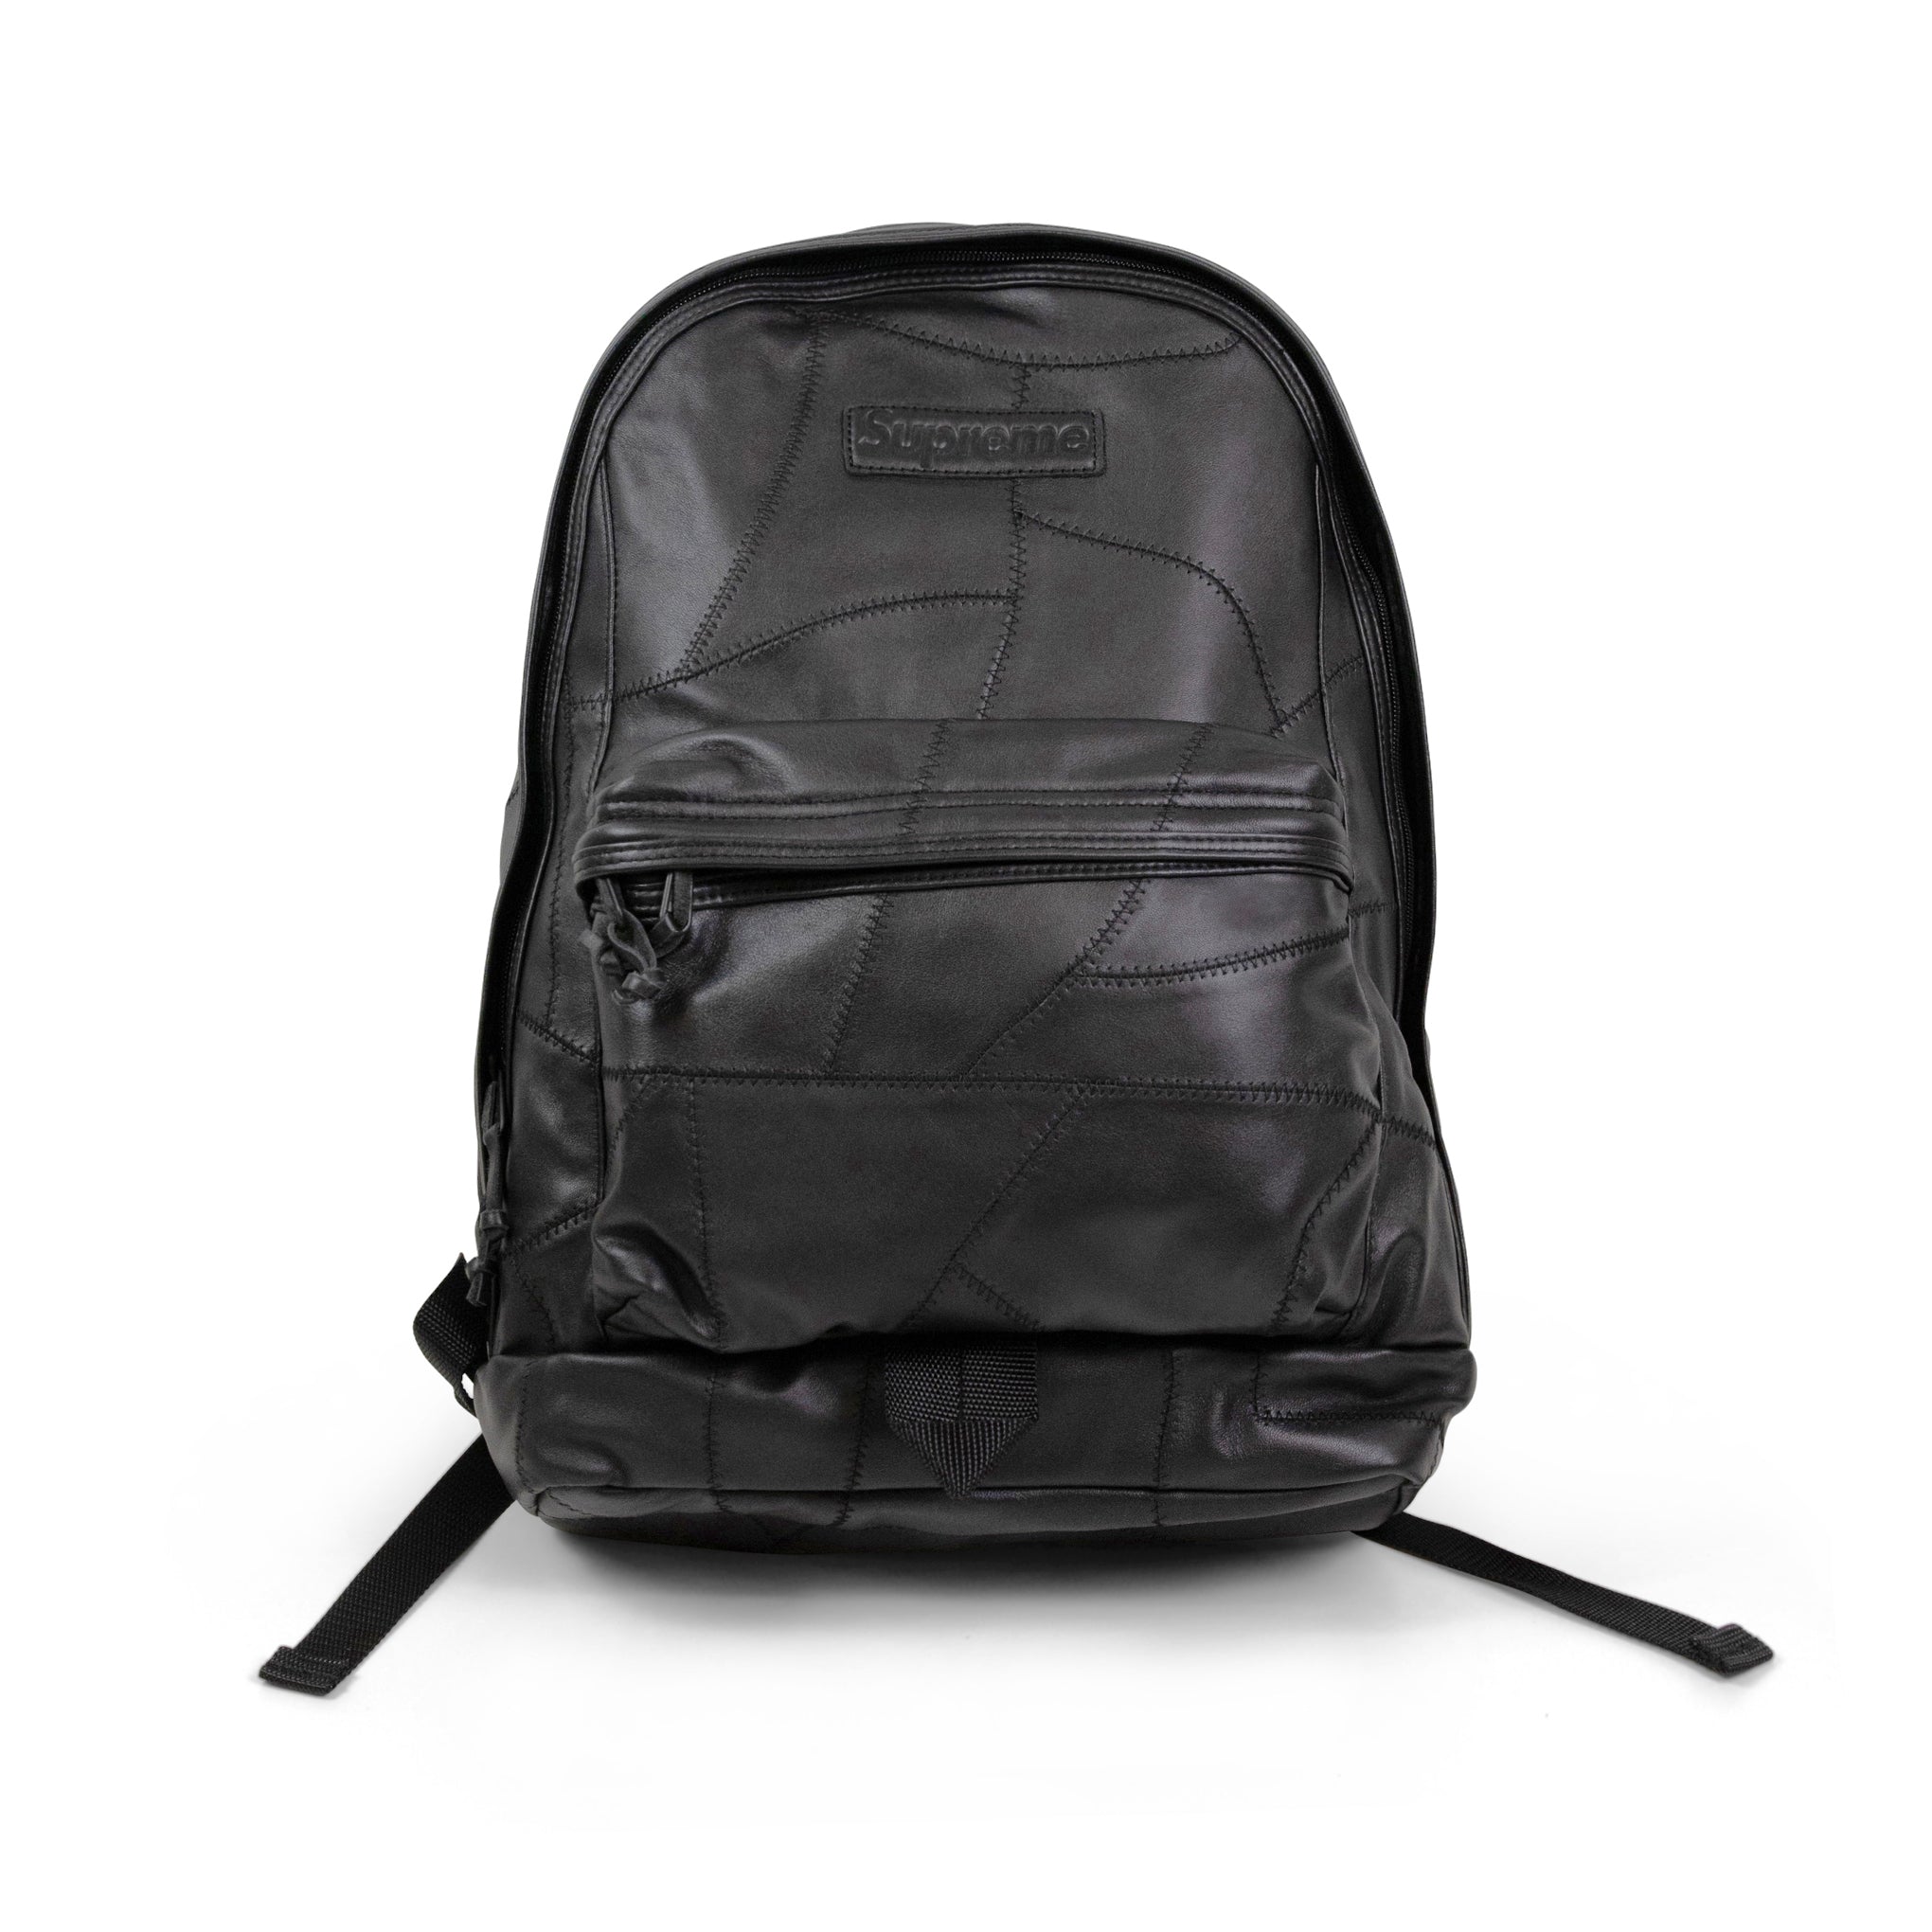 Supreme Patchwork Leather Backpack Black - Novelship